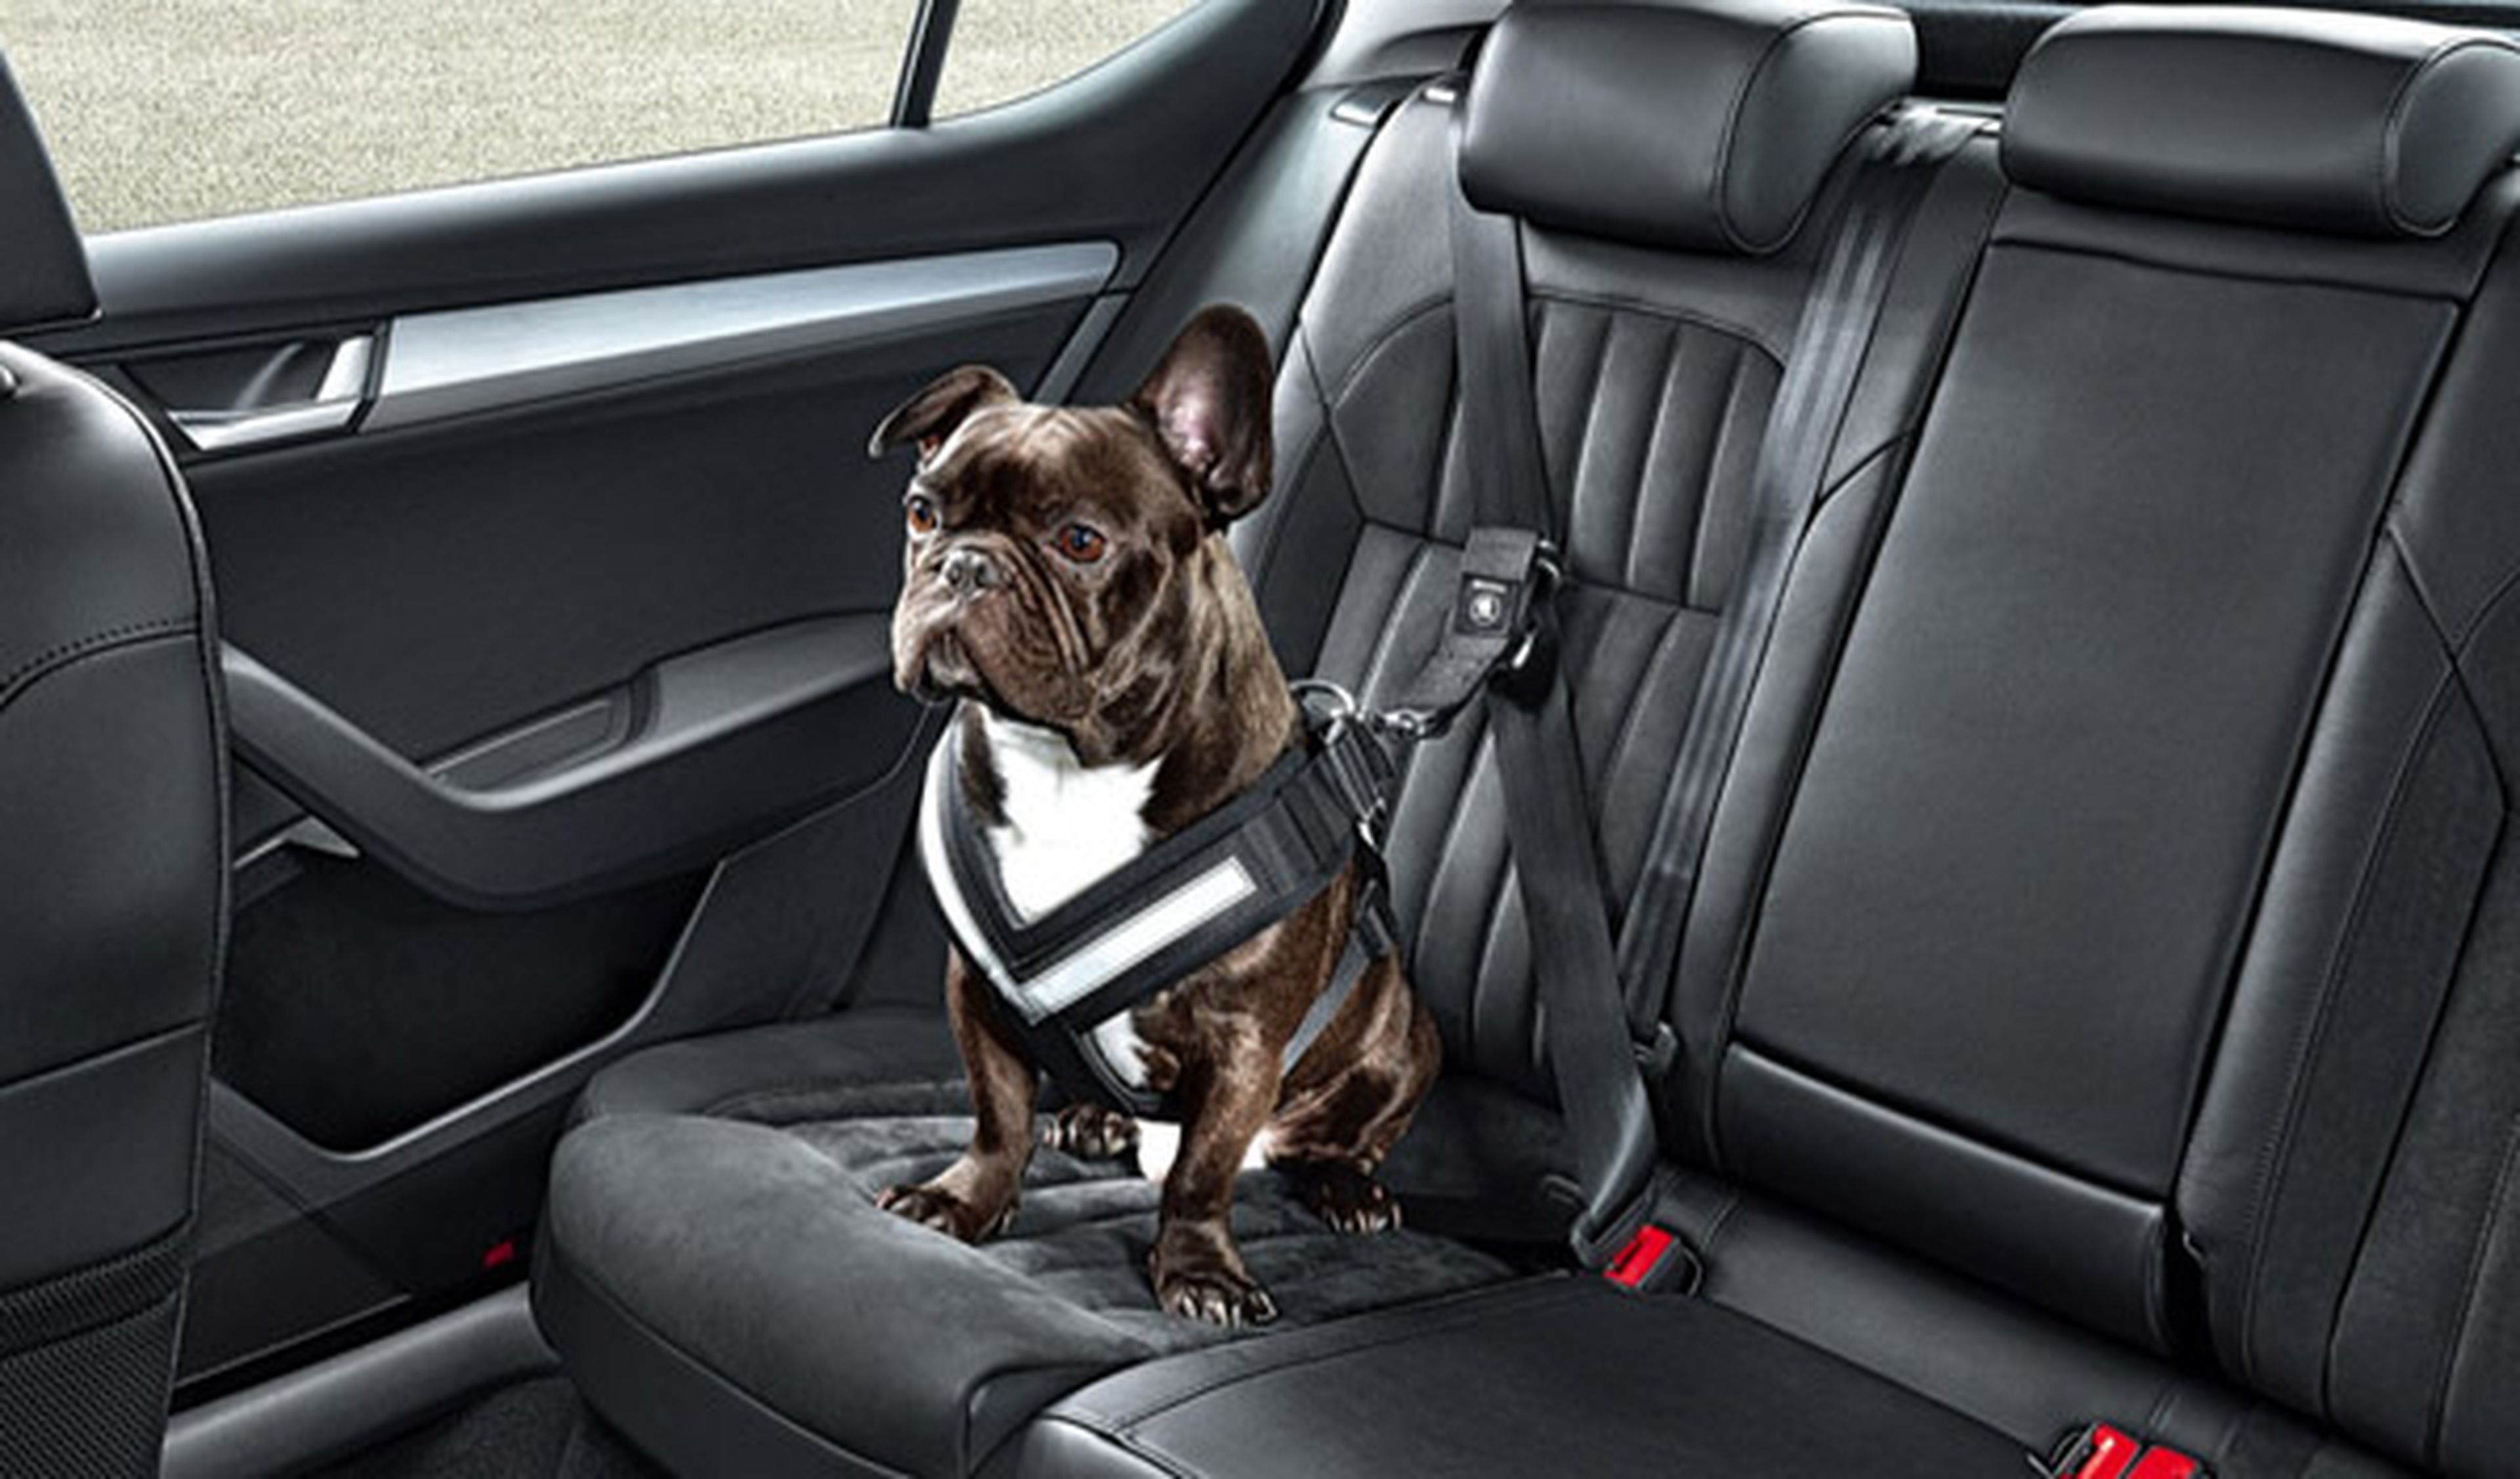 Cómo llevar a tu mascota de viaje de forma segura y legal